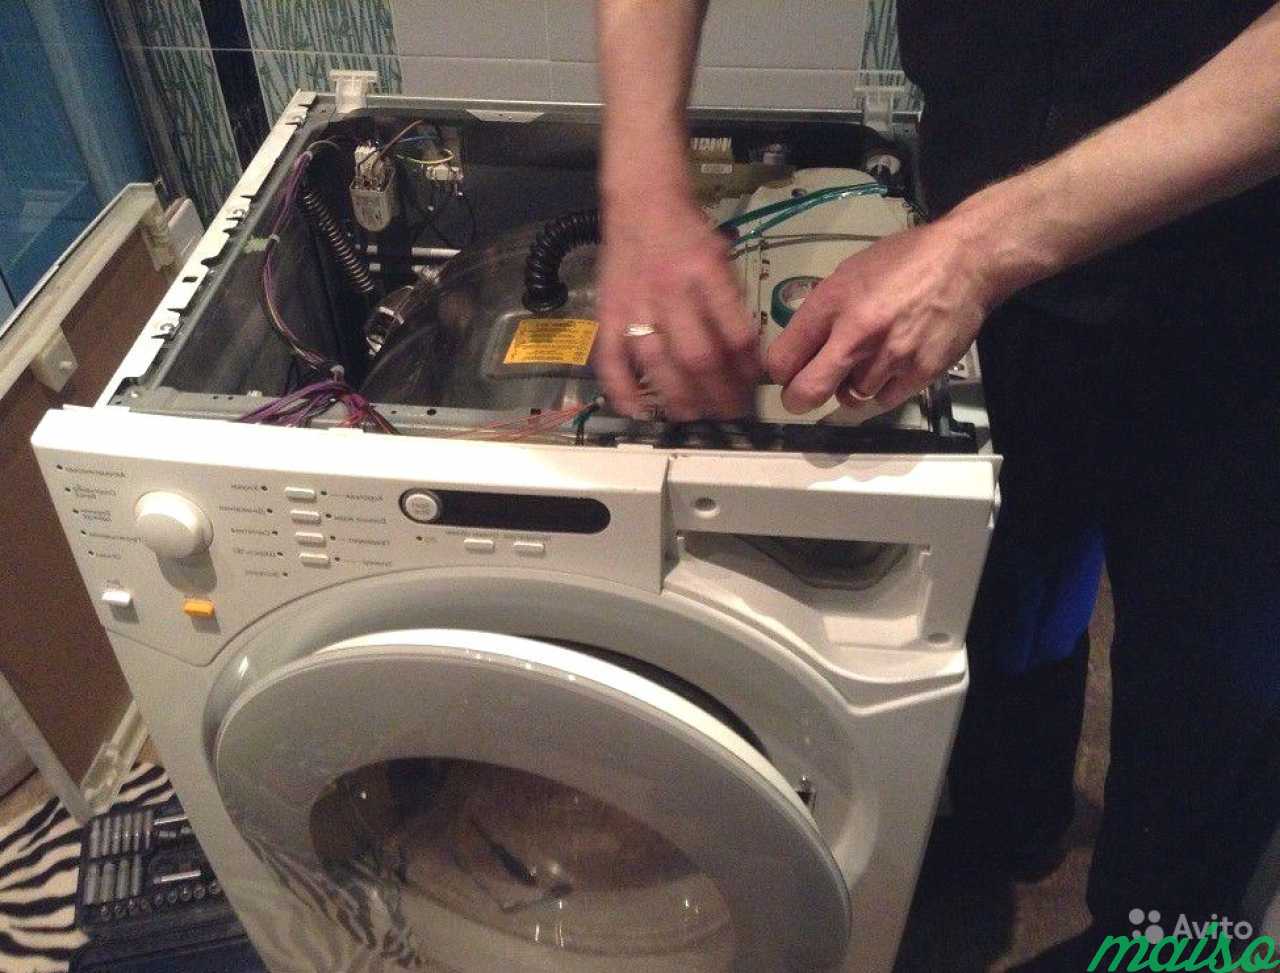 Ремонт com стиральных машин. Ремонт стиральных машин. Мастер по ремонту стиральных машинок. Мастер по стиральным машинам. Сломалась стиральная машина.